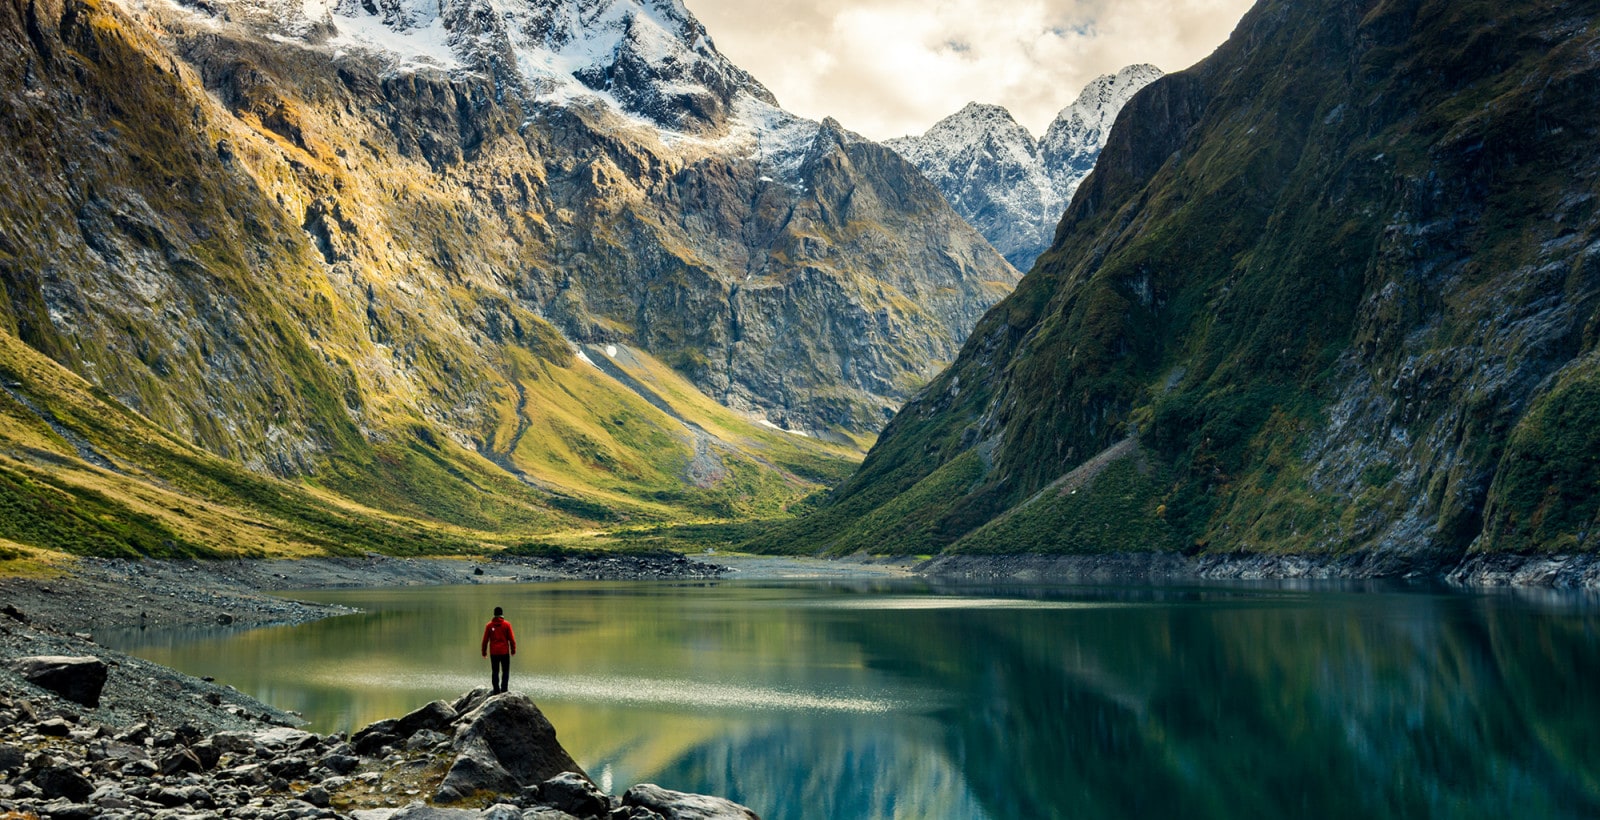 Inilah Trip Ke New Zealand Yang Anda Tak Akan Lupa Sepanjang Hayat